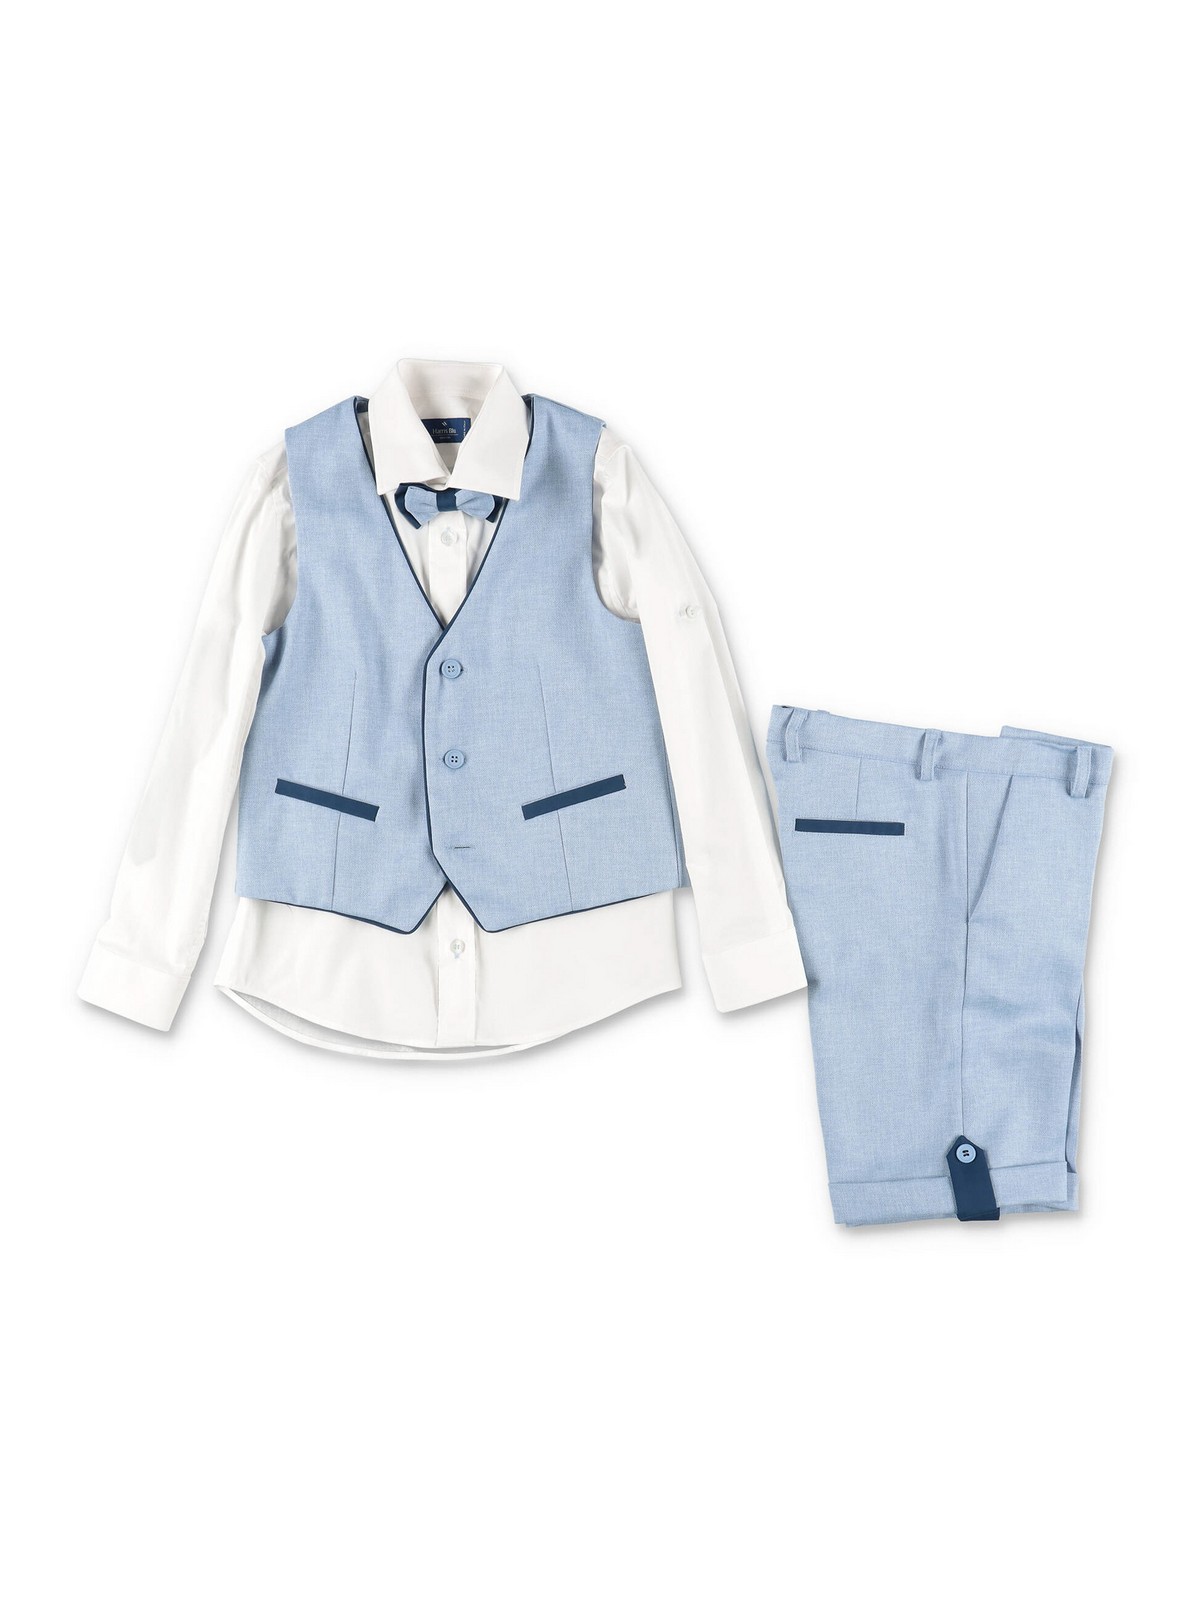 Harris Blu Kids' Business Suit In Light Blue